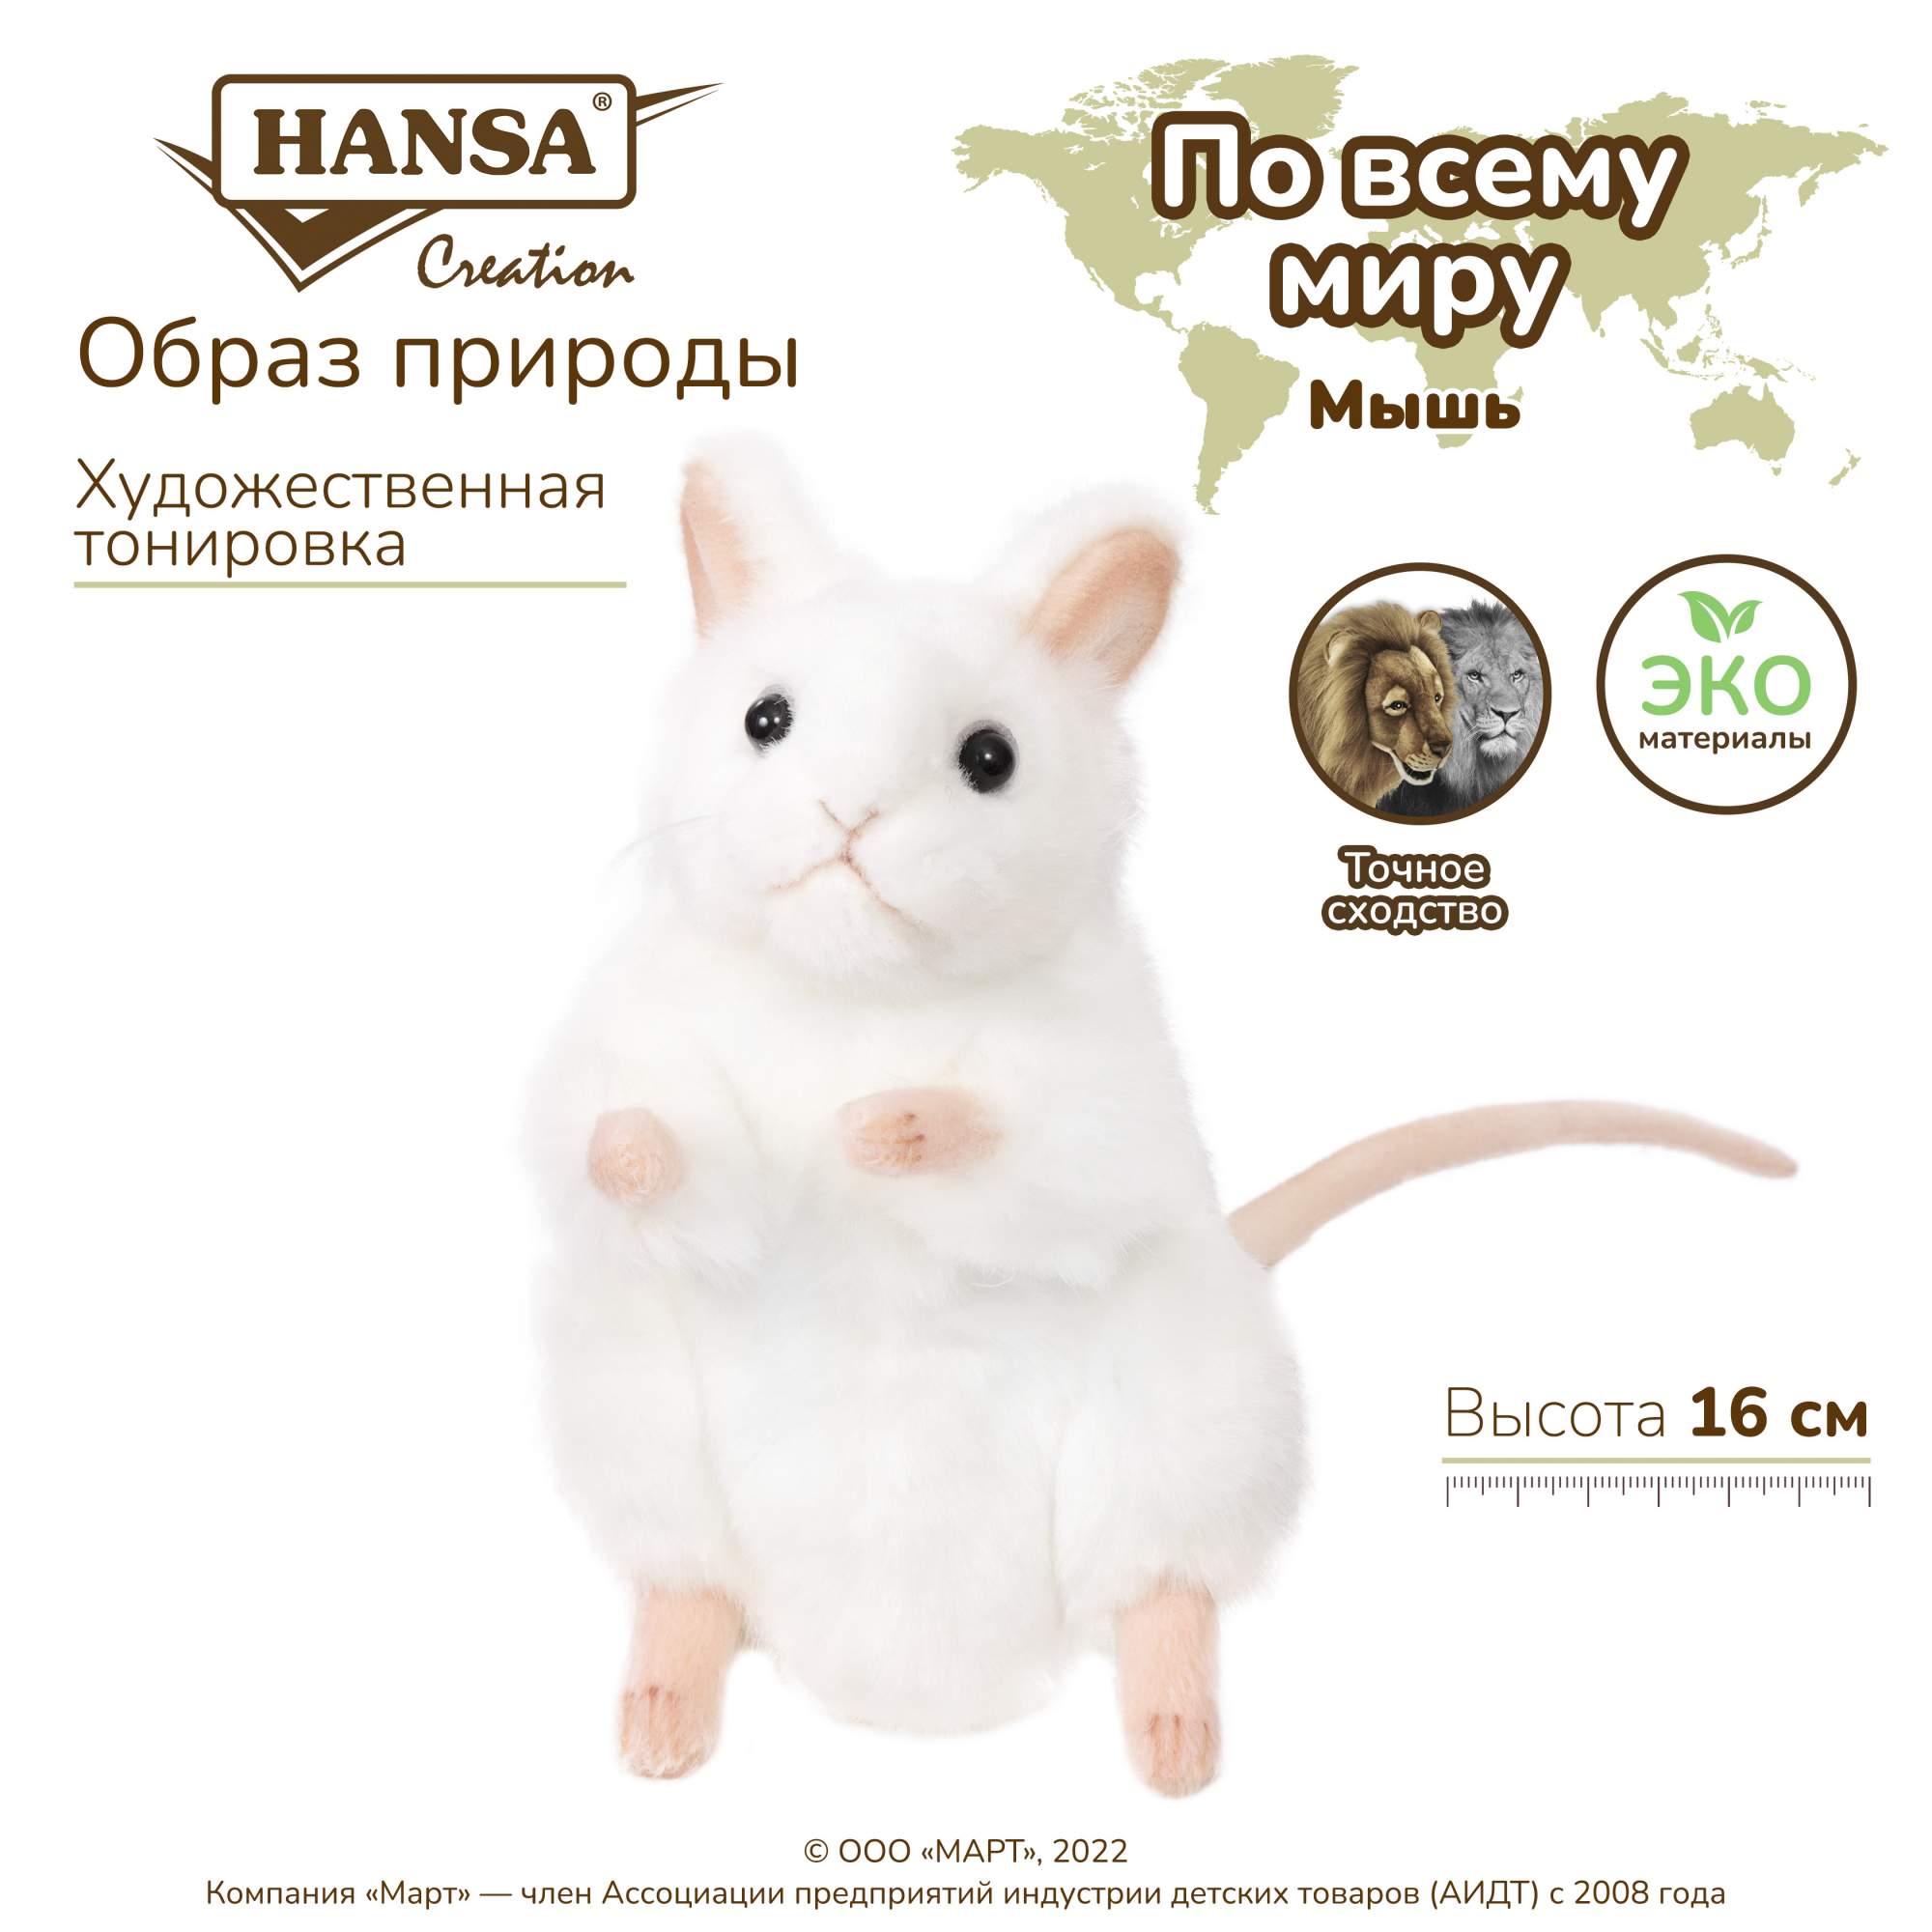 Отзывы о реалистичная мягкая игрушка Hansa Creation Мышь, белая, 16 см - отзывы покупателей на Мегамаркет | мягкие игрушки 5323 - 100023363964